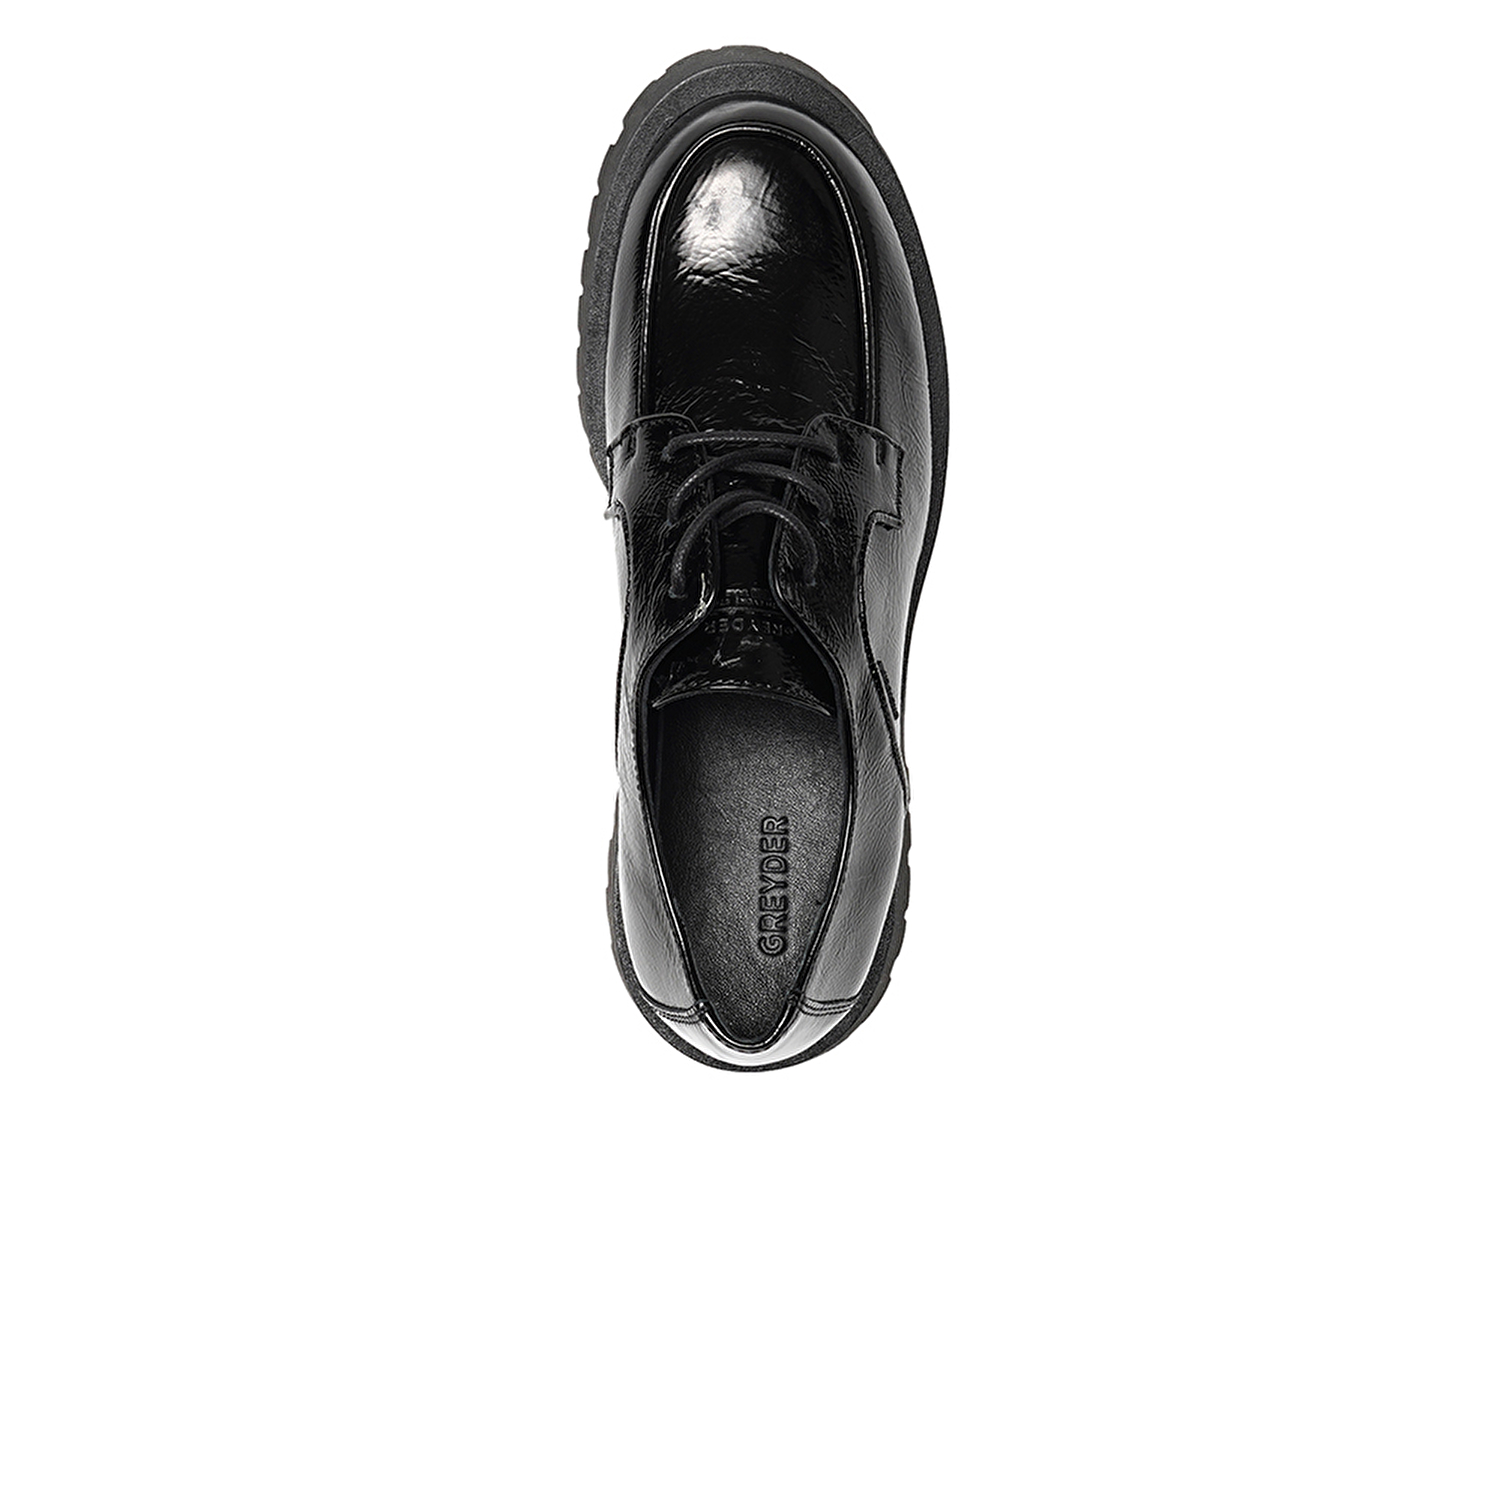 Kadın Siyah Hakiki Deri Oxford Ayakkabı 3K2KA31008-3